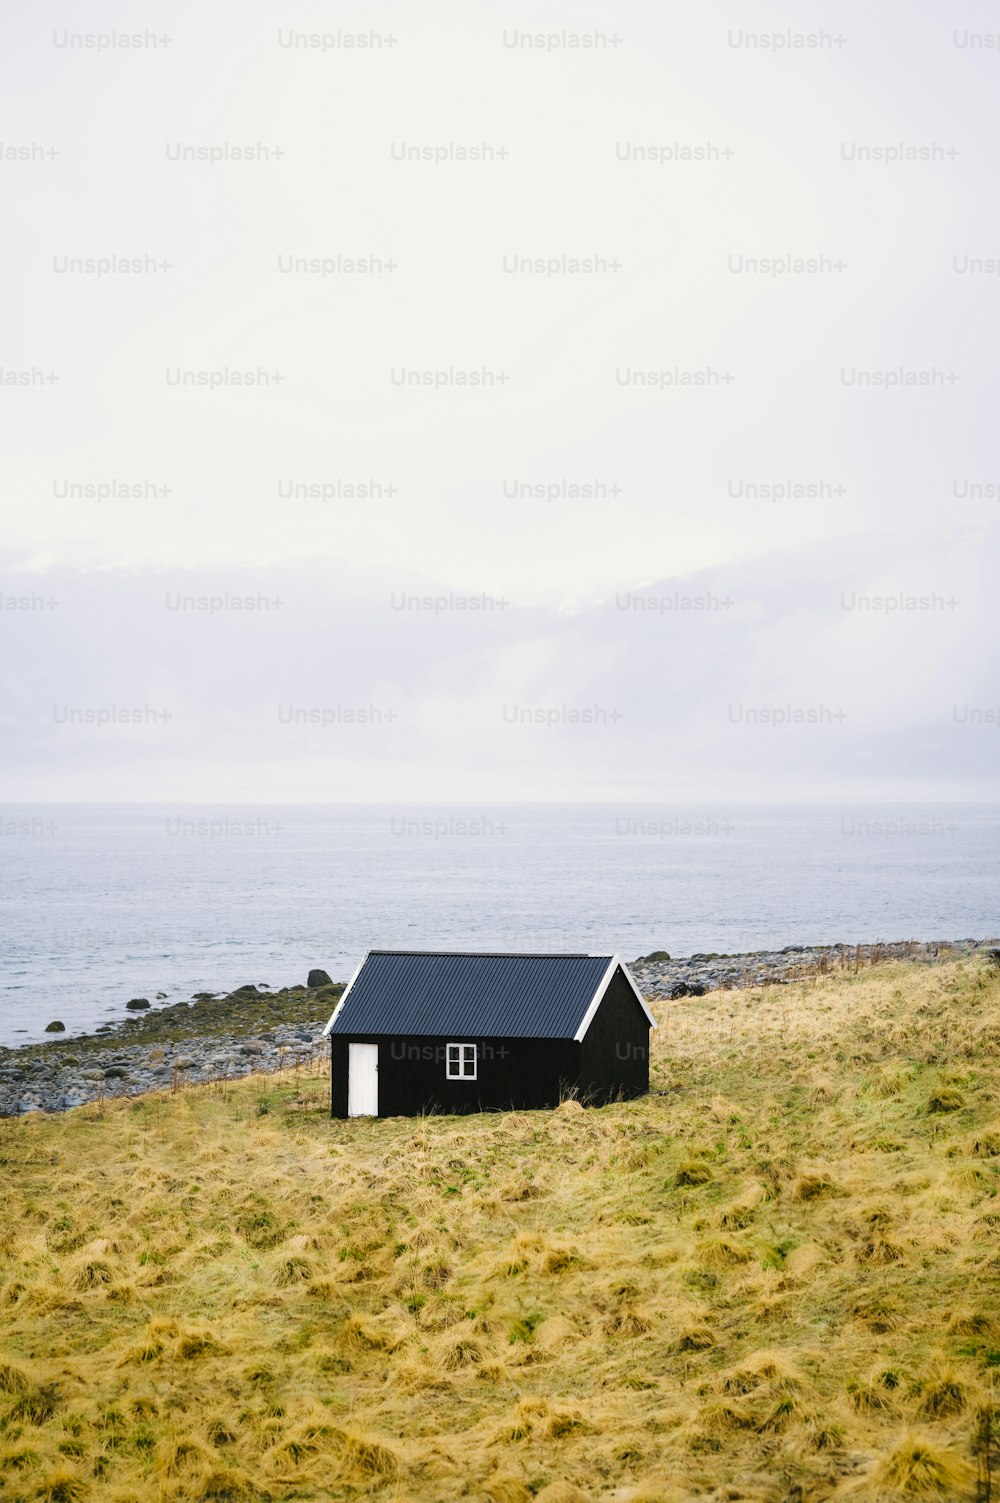 Una pequeña casa negra sentada encima de un campo cubierto de hierba